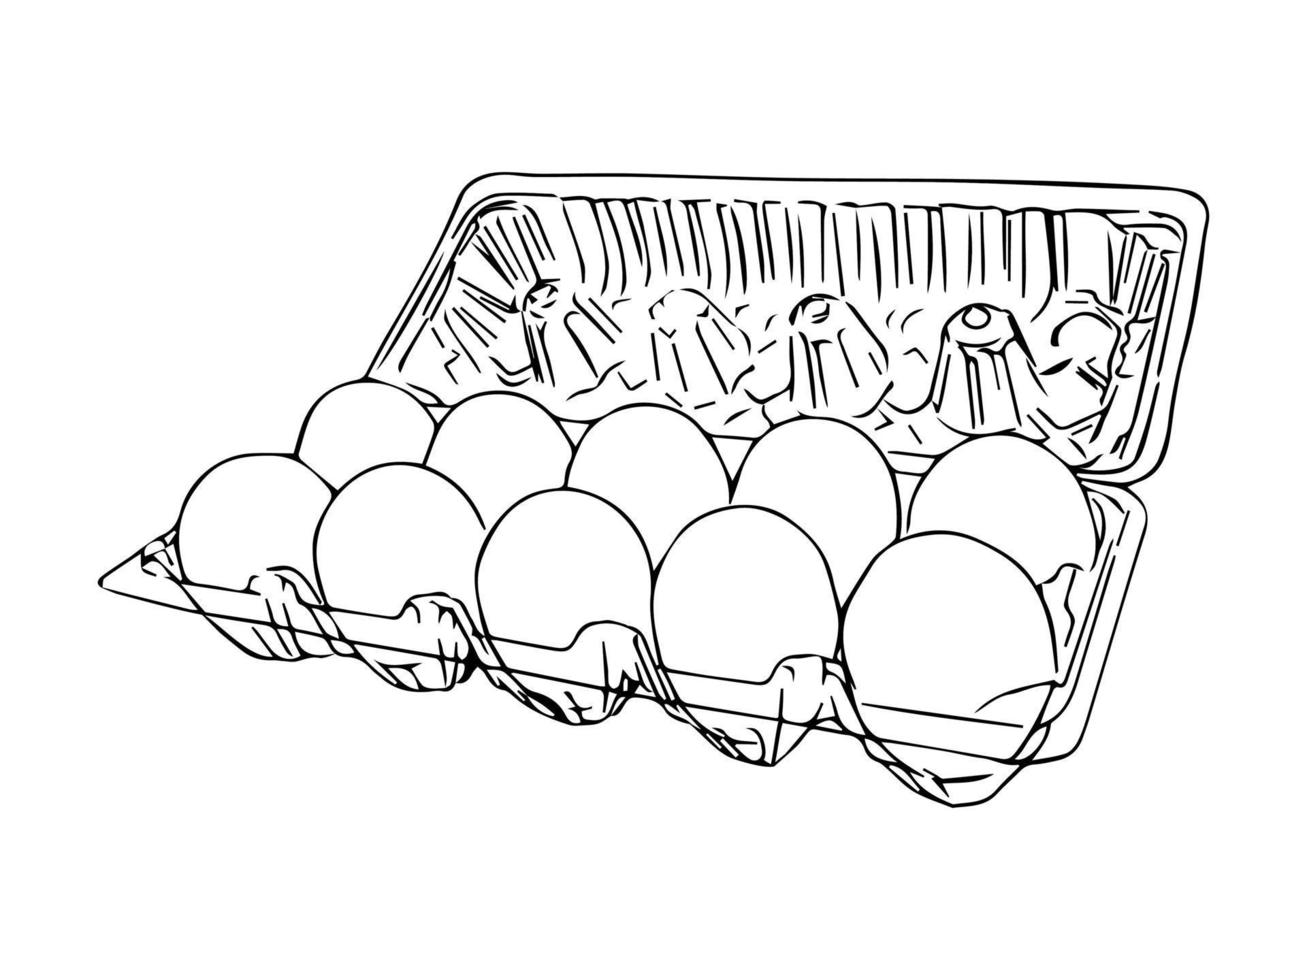 scatola di uova dal supermercato isolato disegno a mano vettoriale